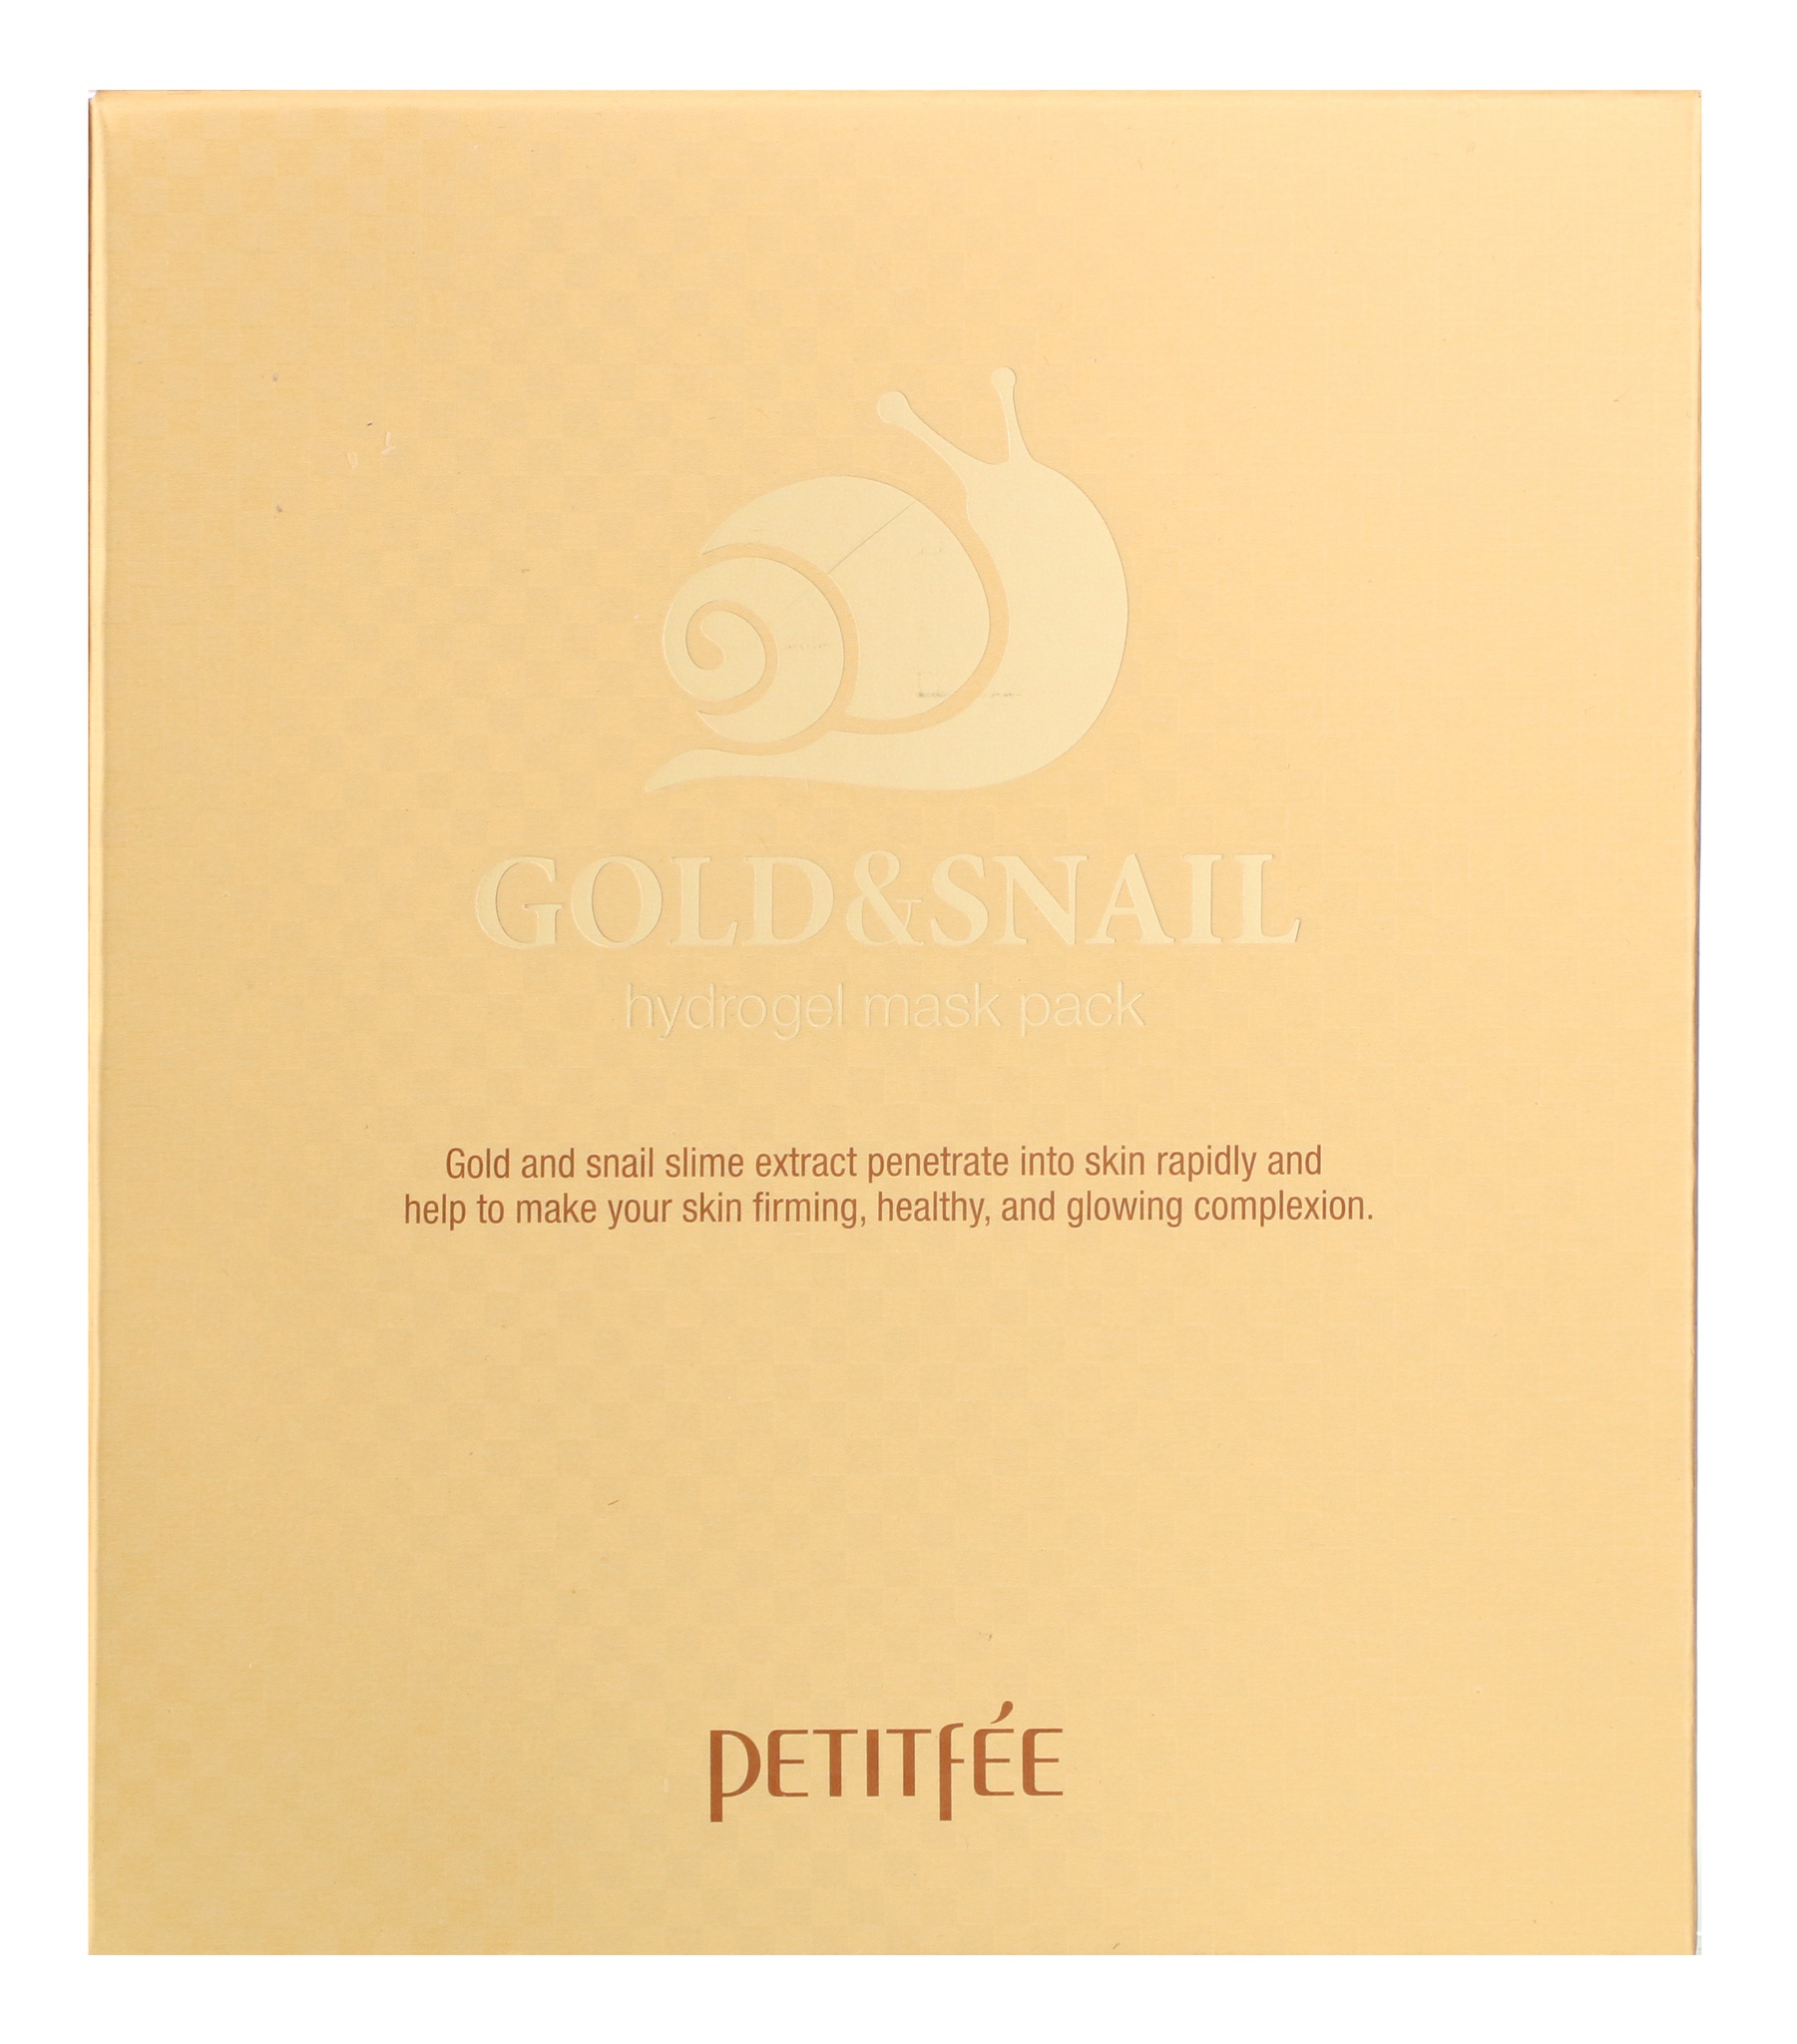 Petitfee Gold & Snail Hydrogel Beauty Mask Pack